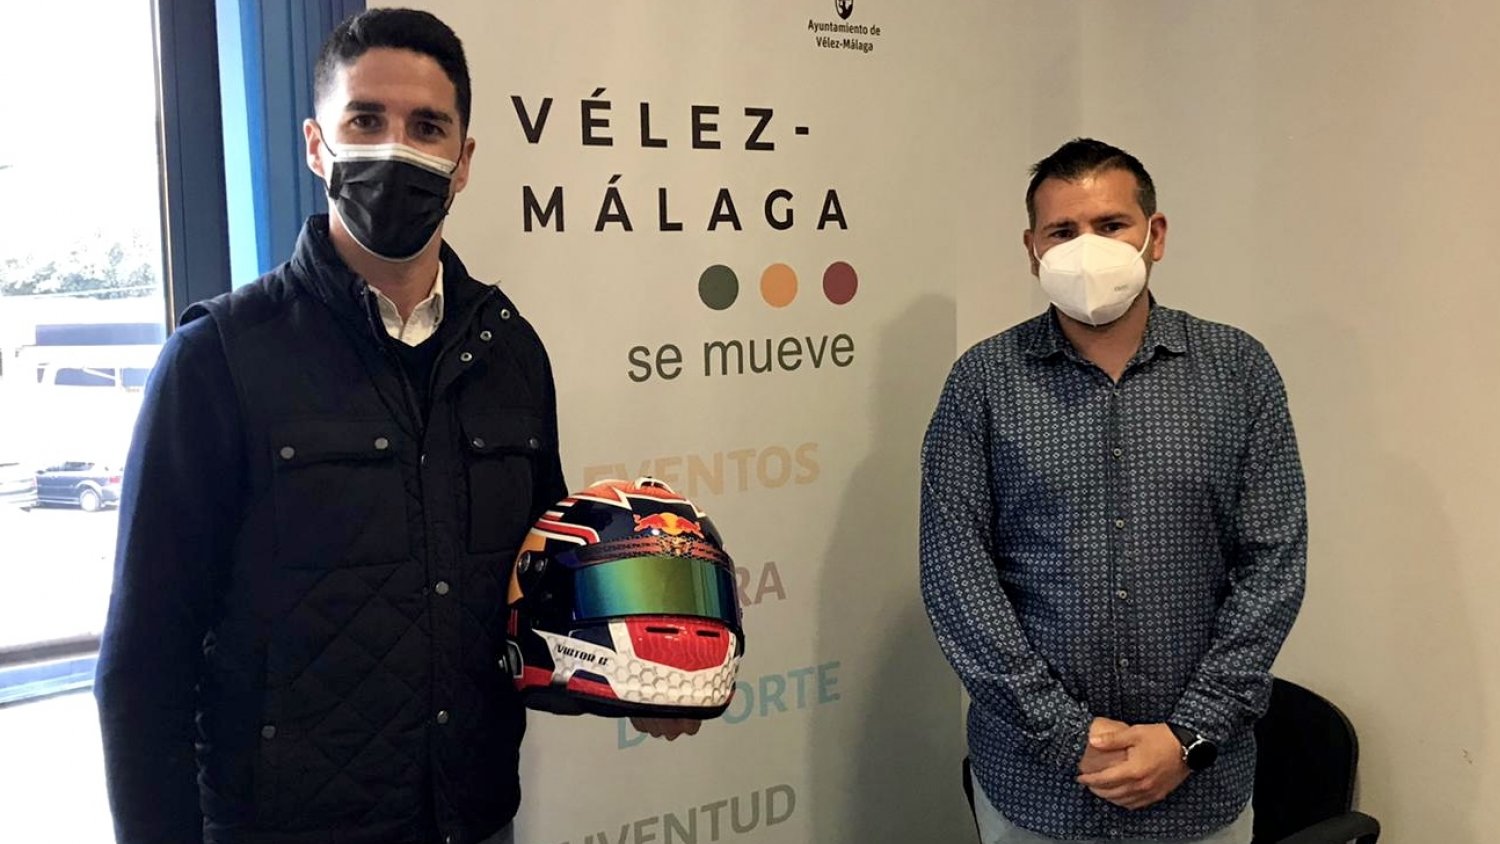 Vélez- Málaga recibe a Víctor Cordero antes de el Campeonato Andaluz de Automovilismo